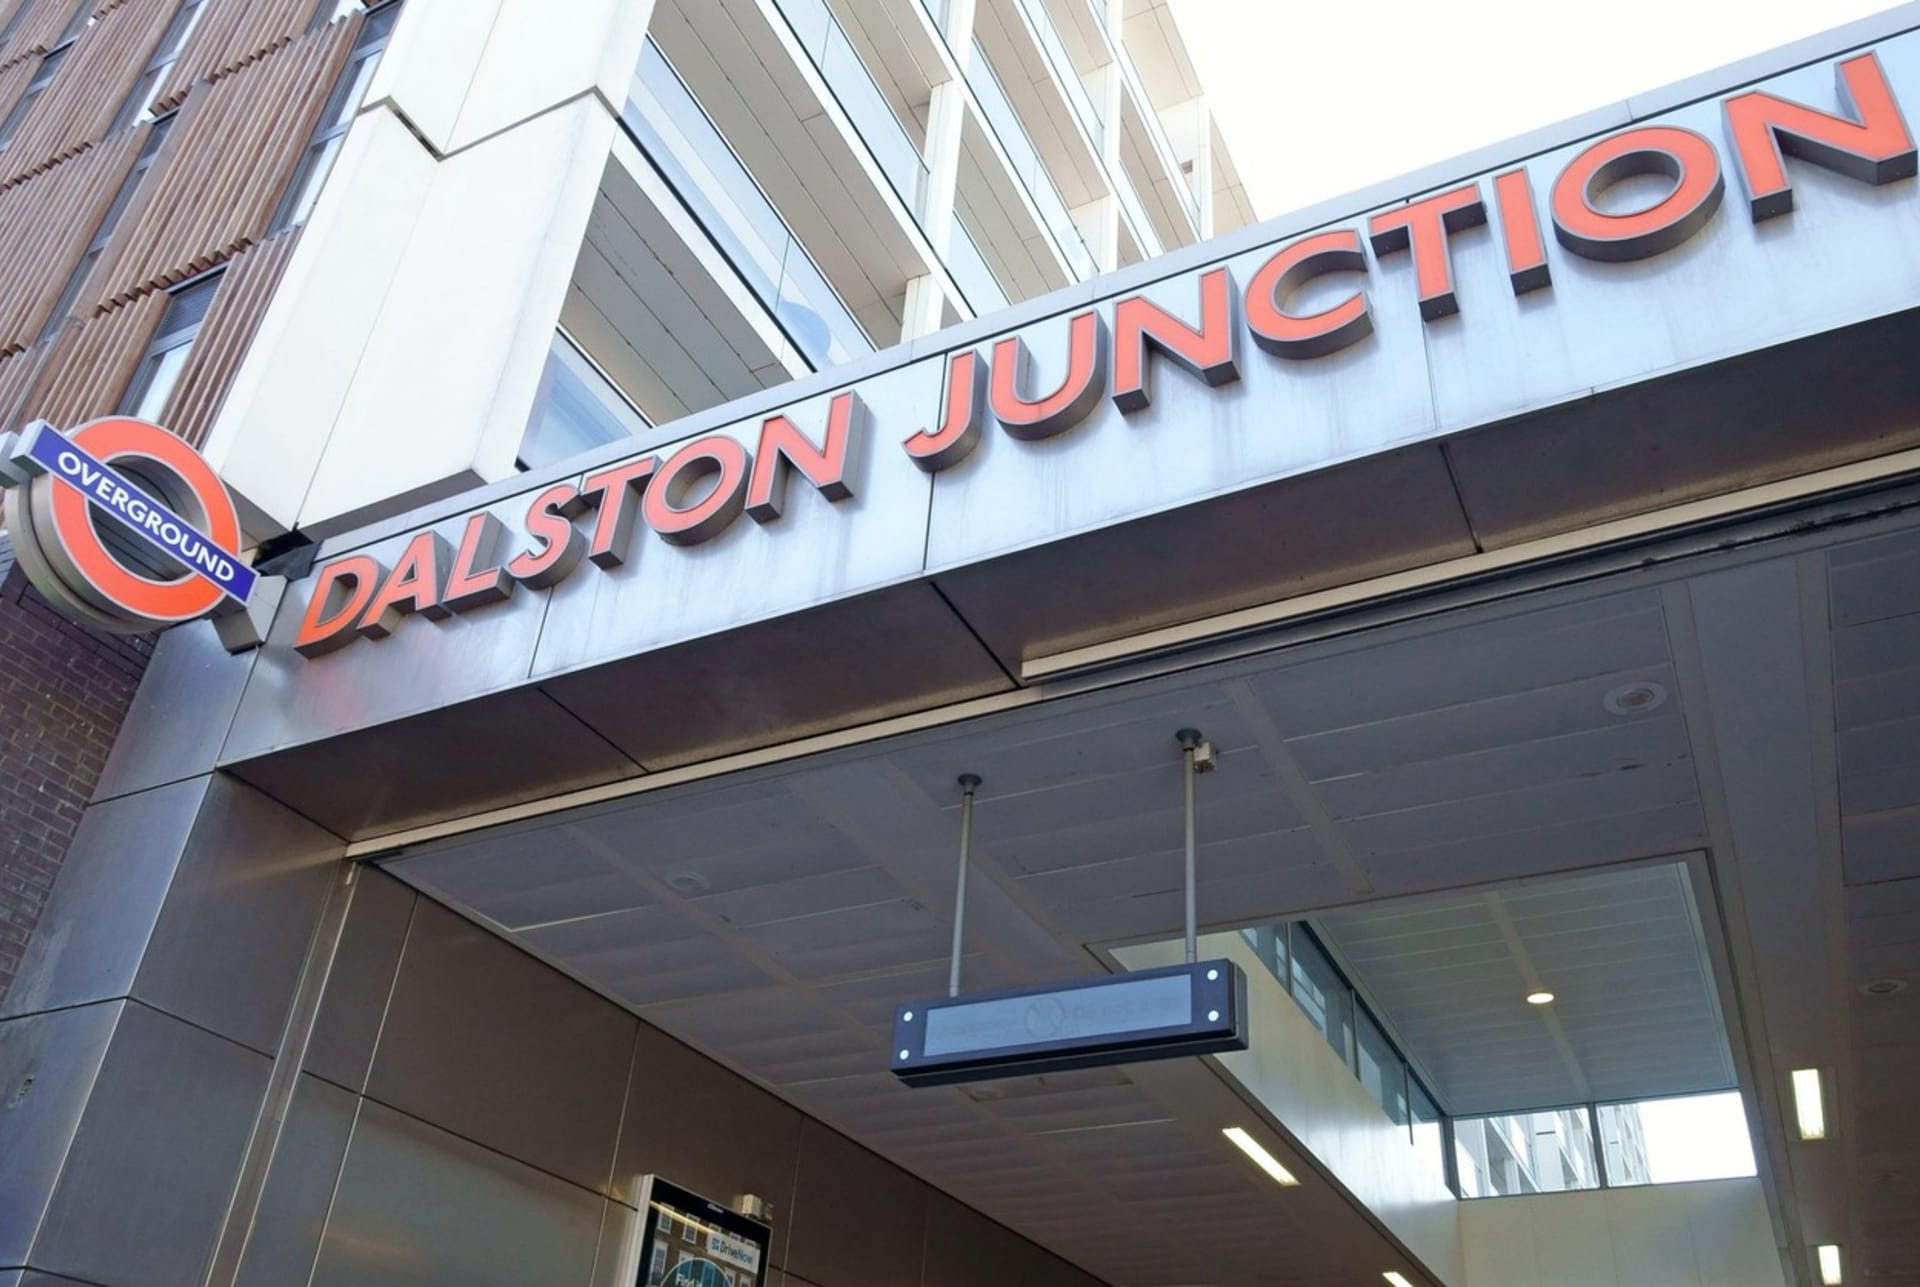 Londýnské metro Dalston Junction 